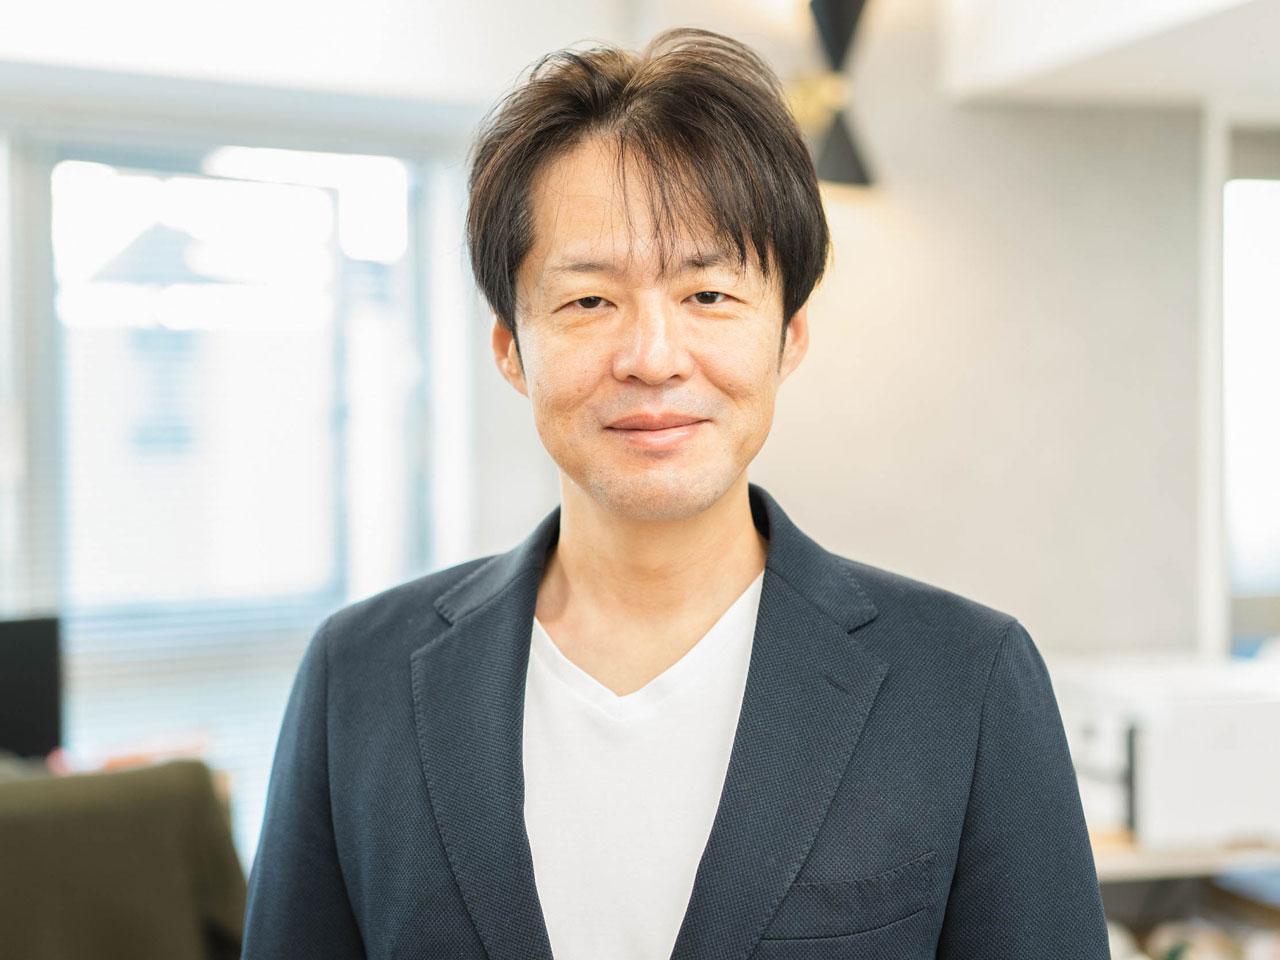 同社は、システム開発企業でキャリアをスタートさせた代表取締役・蔦清吾氏がフリーランスとしての活動を経て、2009年に設立した企業だ。